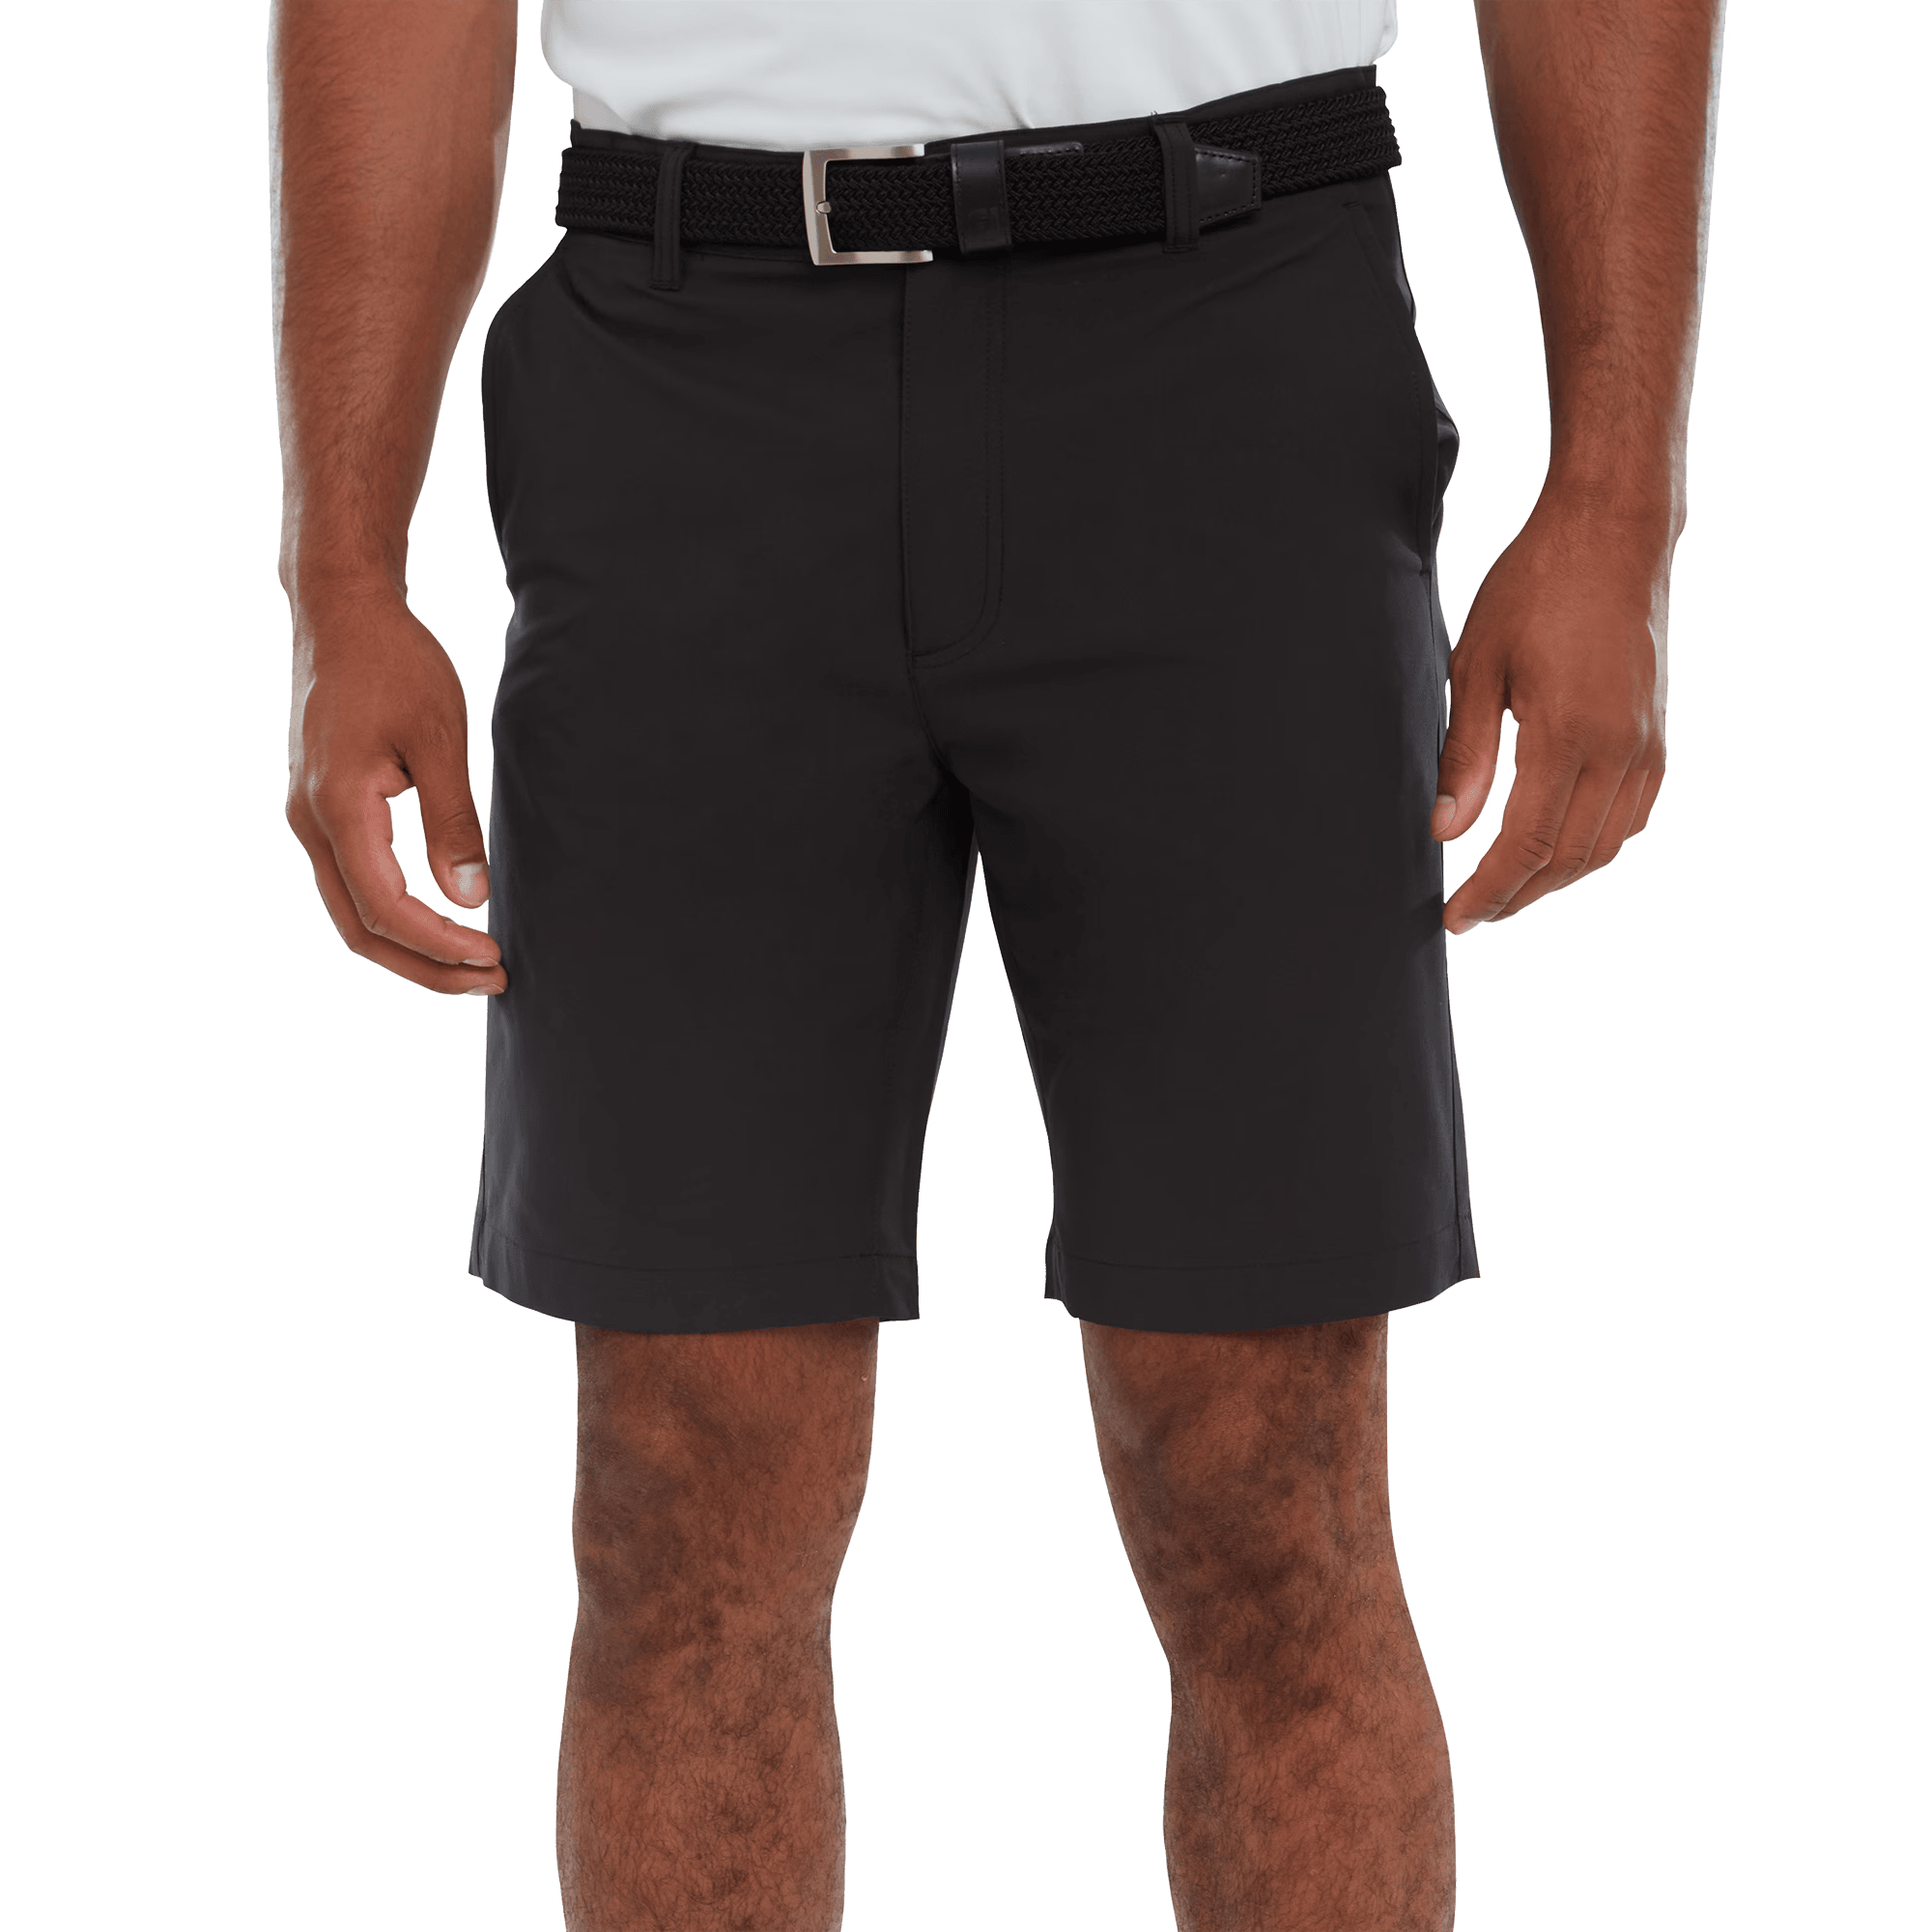 Golf Shorts for Men | Comfortable & Stylish Golf Attire | FootJoy UK